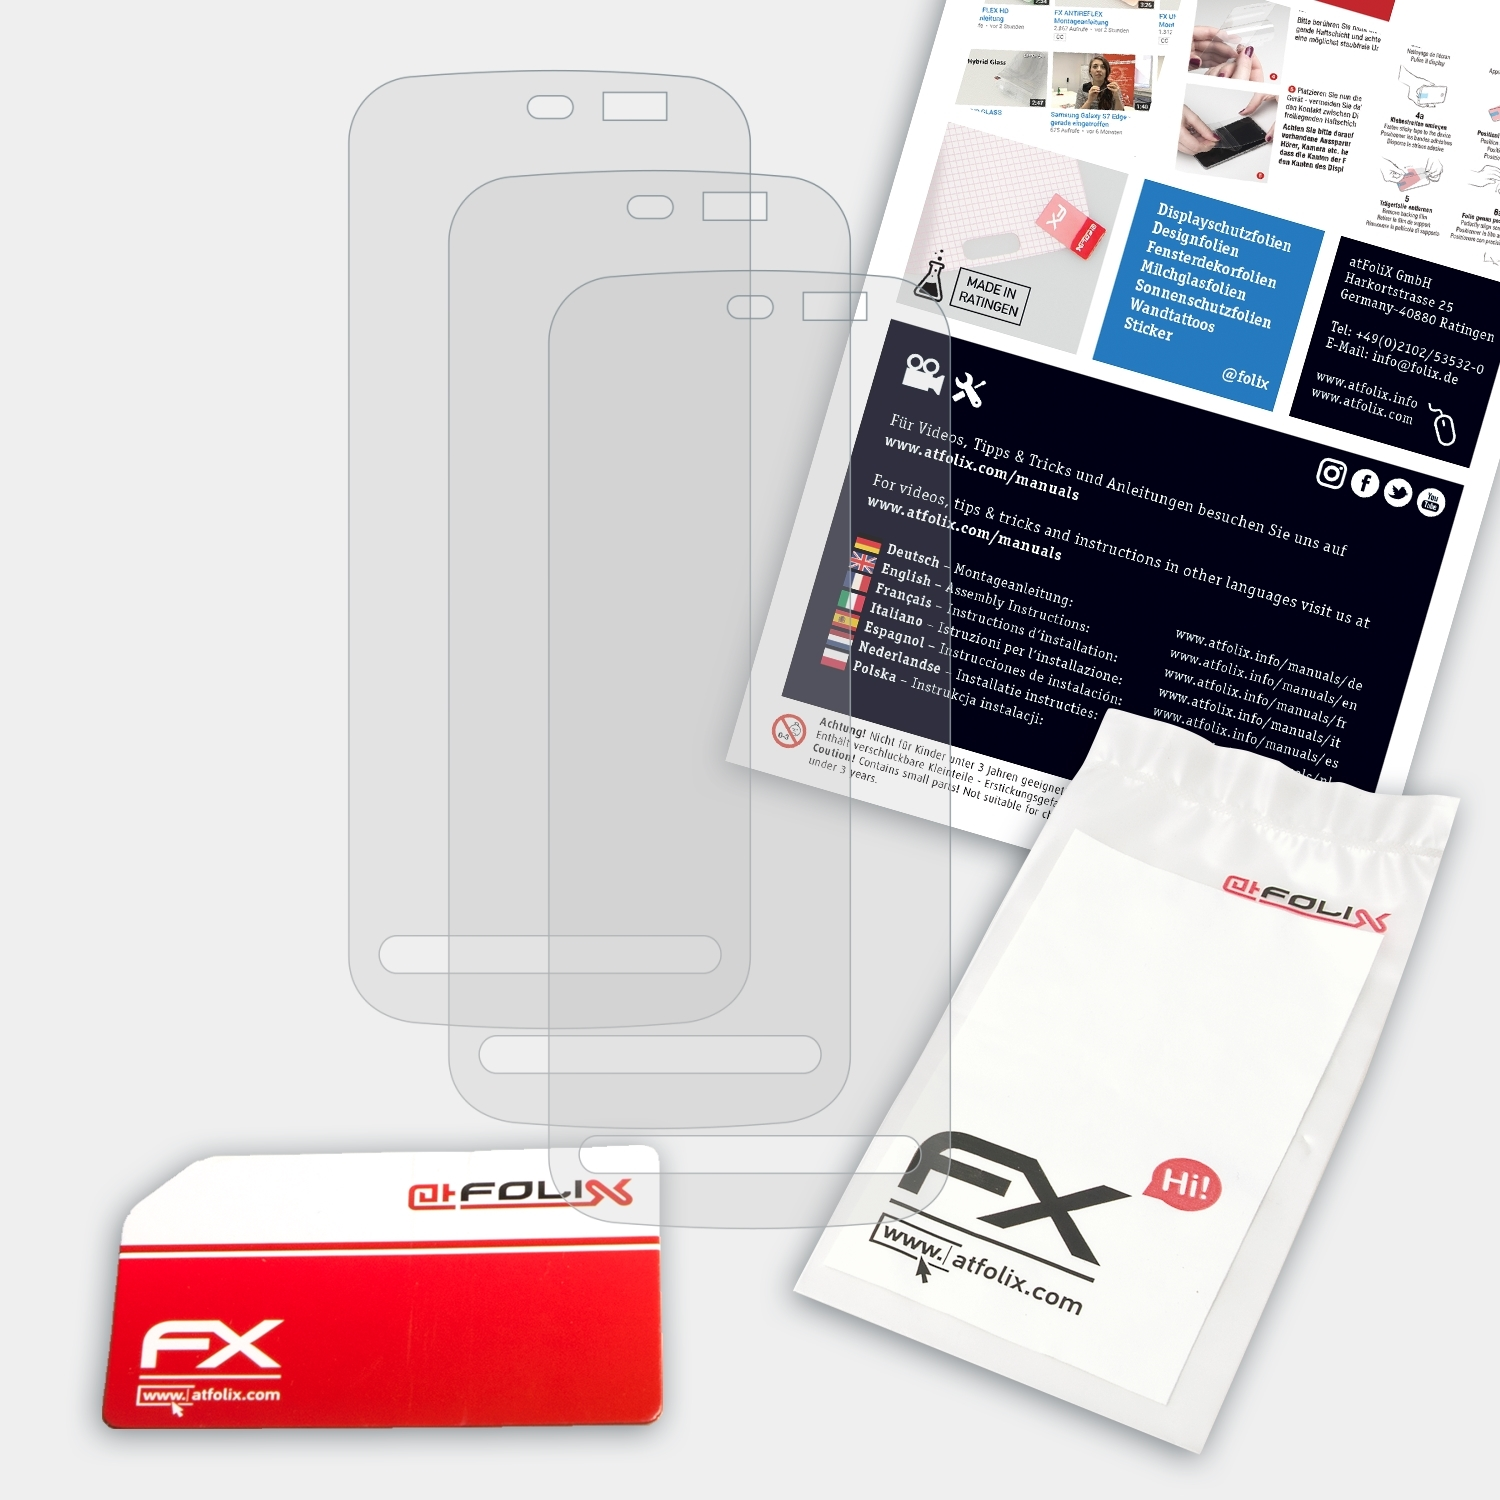 Nokia ATFOLIX Displayschutz(für Nuron) FX-Antireflex 3x 5230